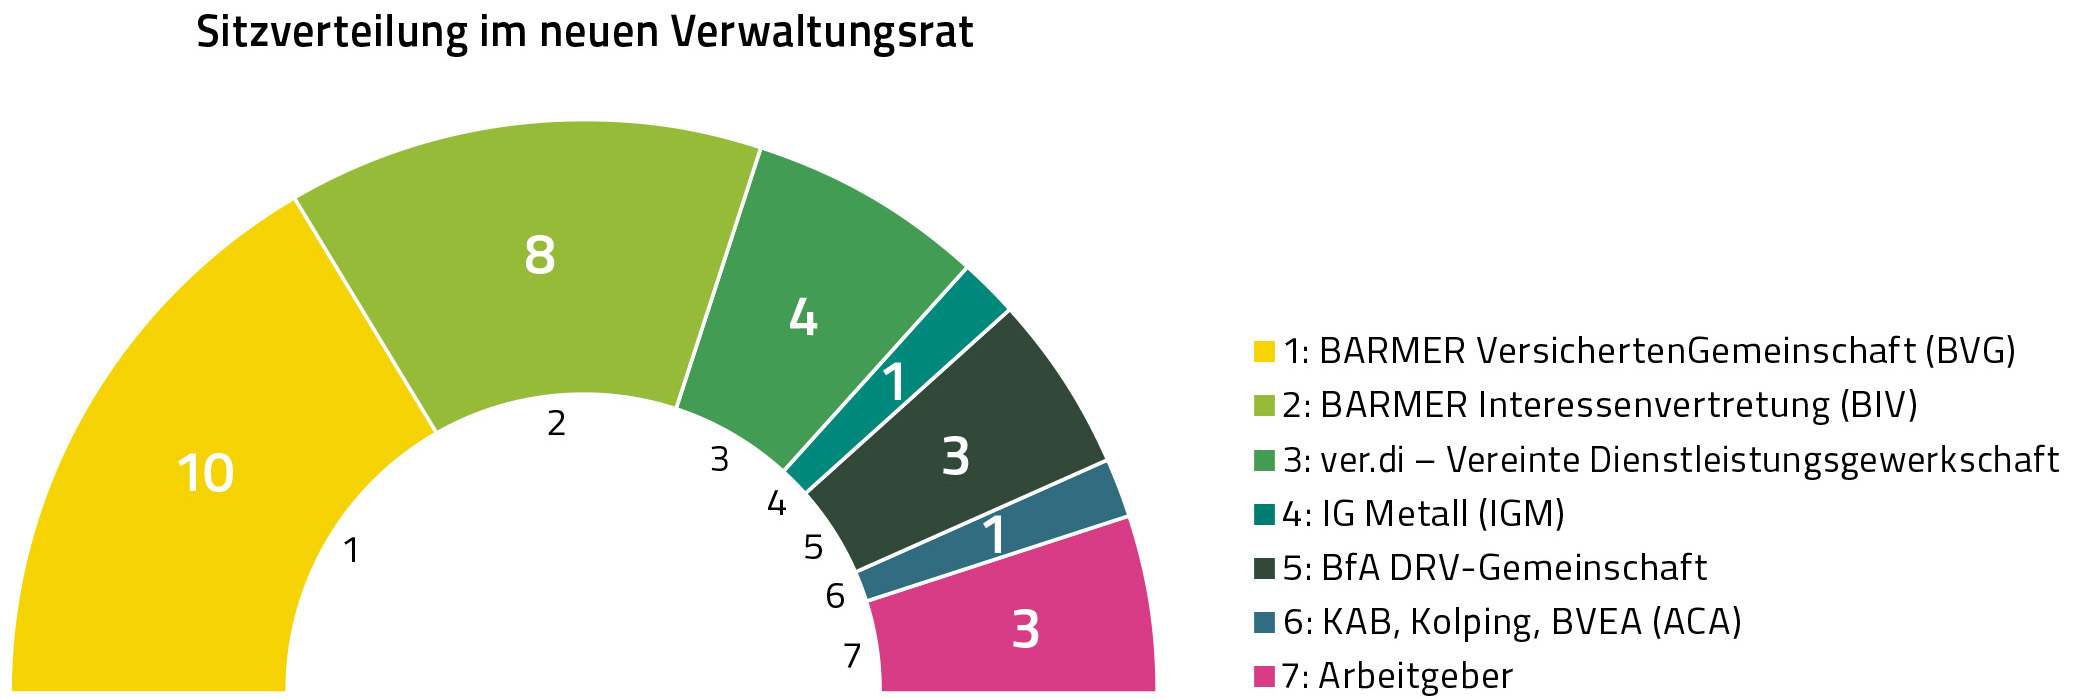 Sitzverteilung Barmer Verwaltungsrat 11-2017